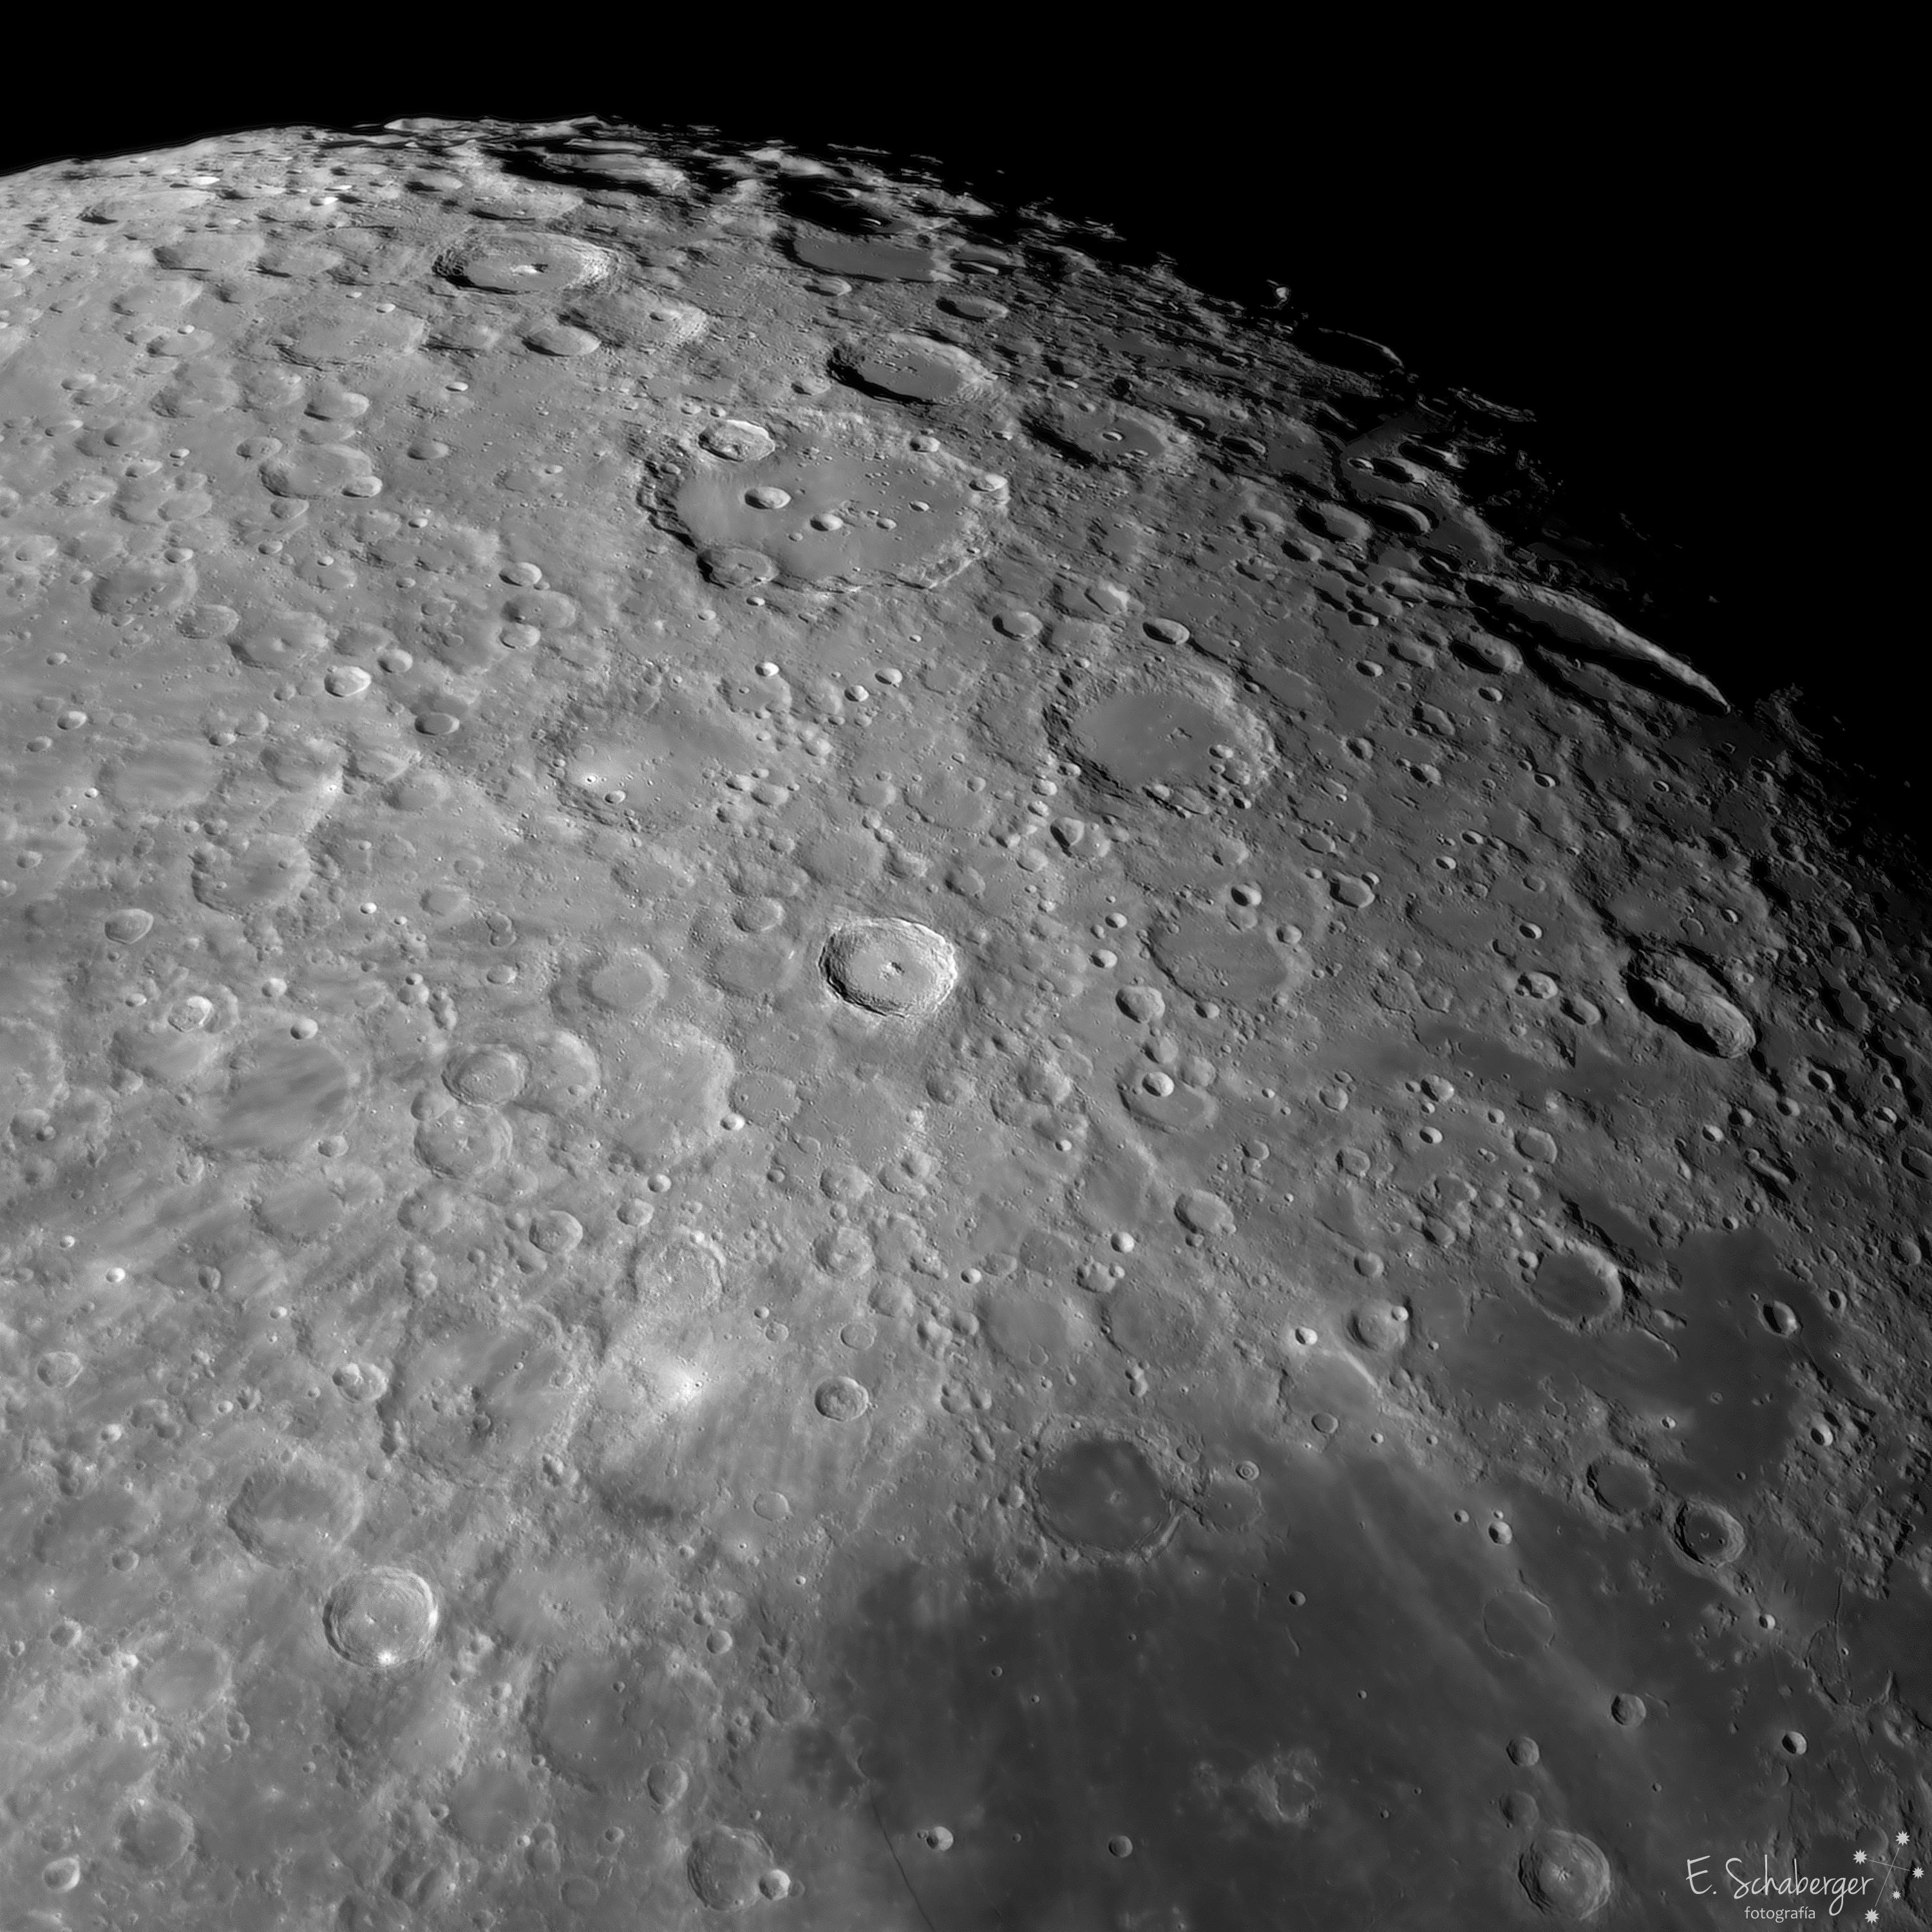 صورة مقرّبة لسطح القمر تظهر فوّهة تيخو بالأشعّة المنبثقة منها وفوّهة كلاڤيوس الملساء إلى الأعلى منها.